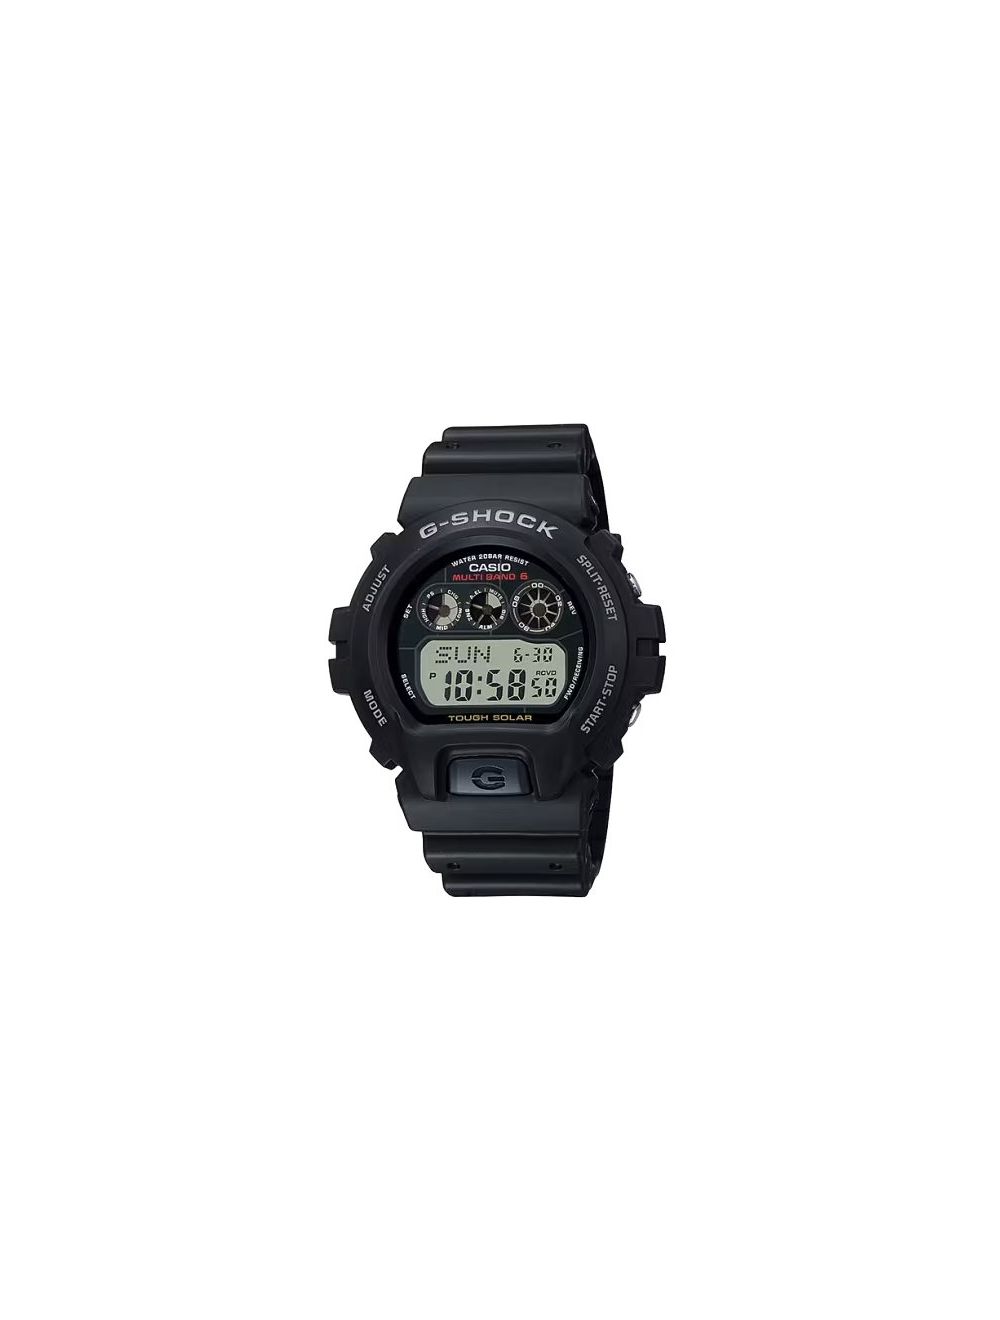 G-Shock 6900 Series Solar Powered Atomic-Timekeeping Watch